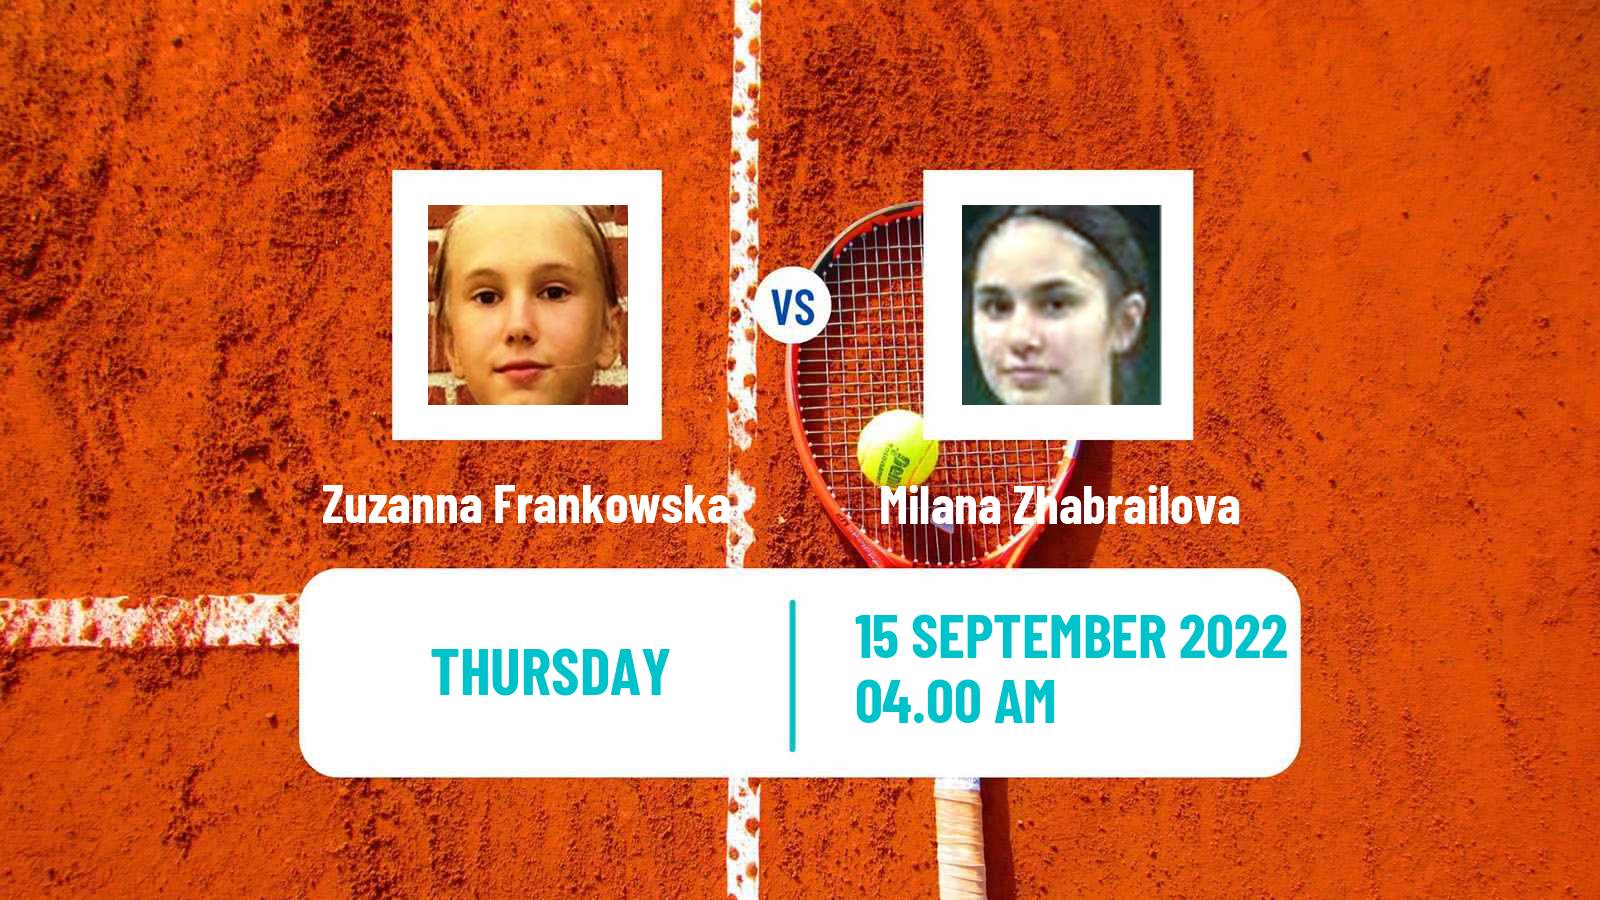 Tennis ITF Tournaments Zuzanna Frankowska - Milana Zhabrailova